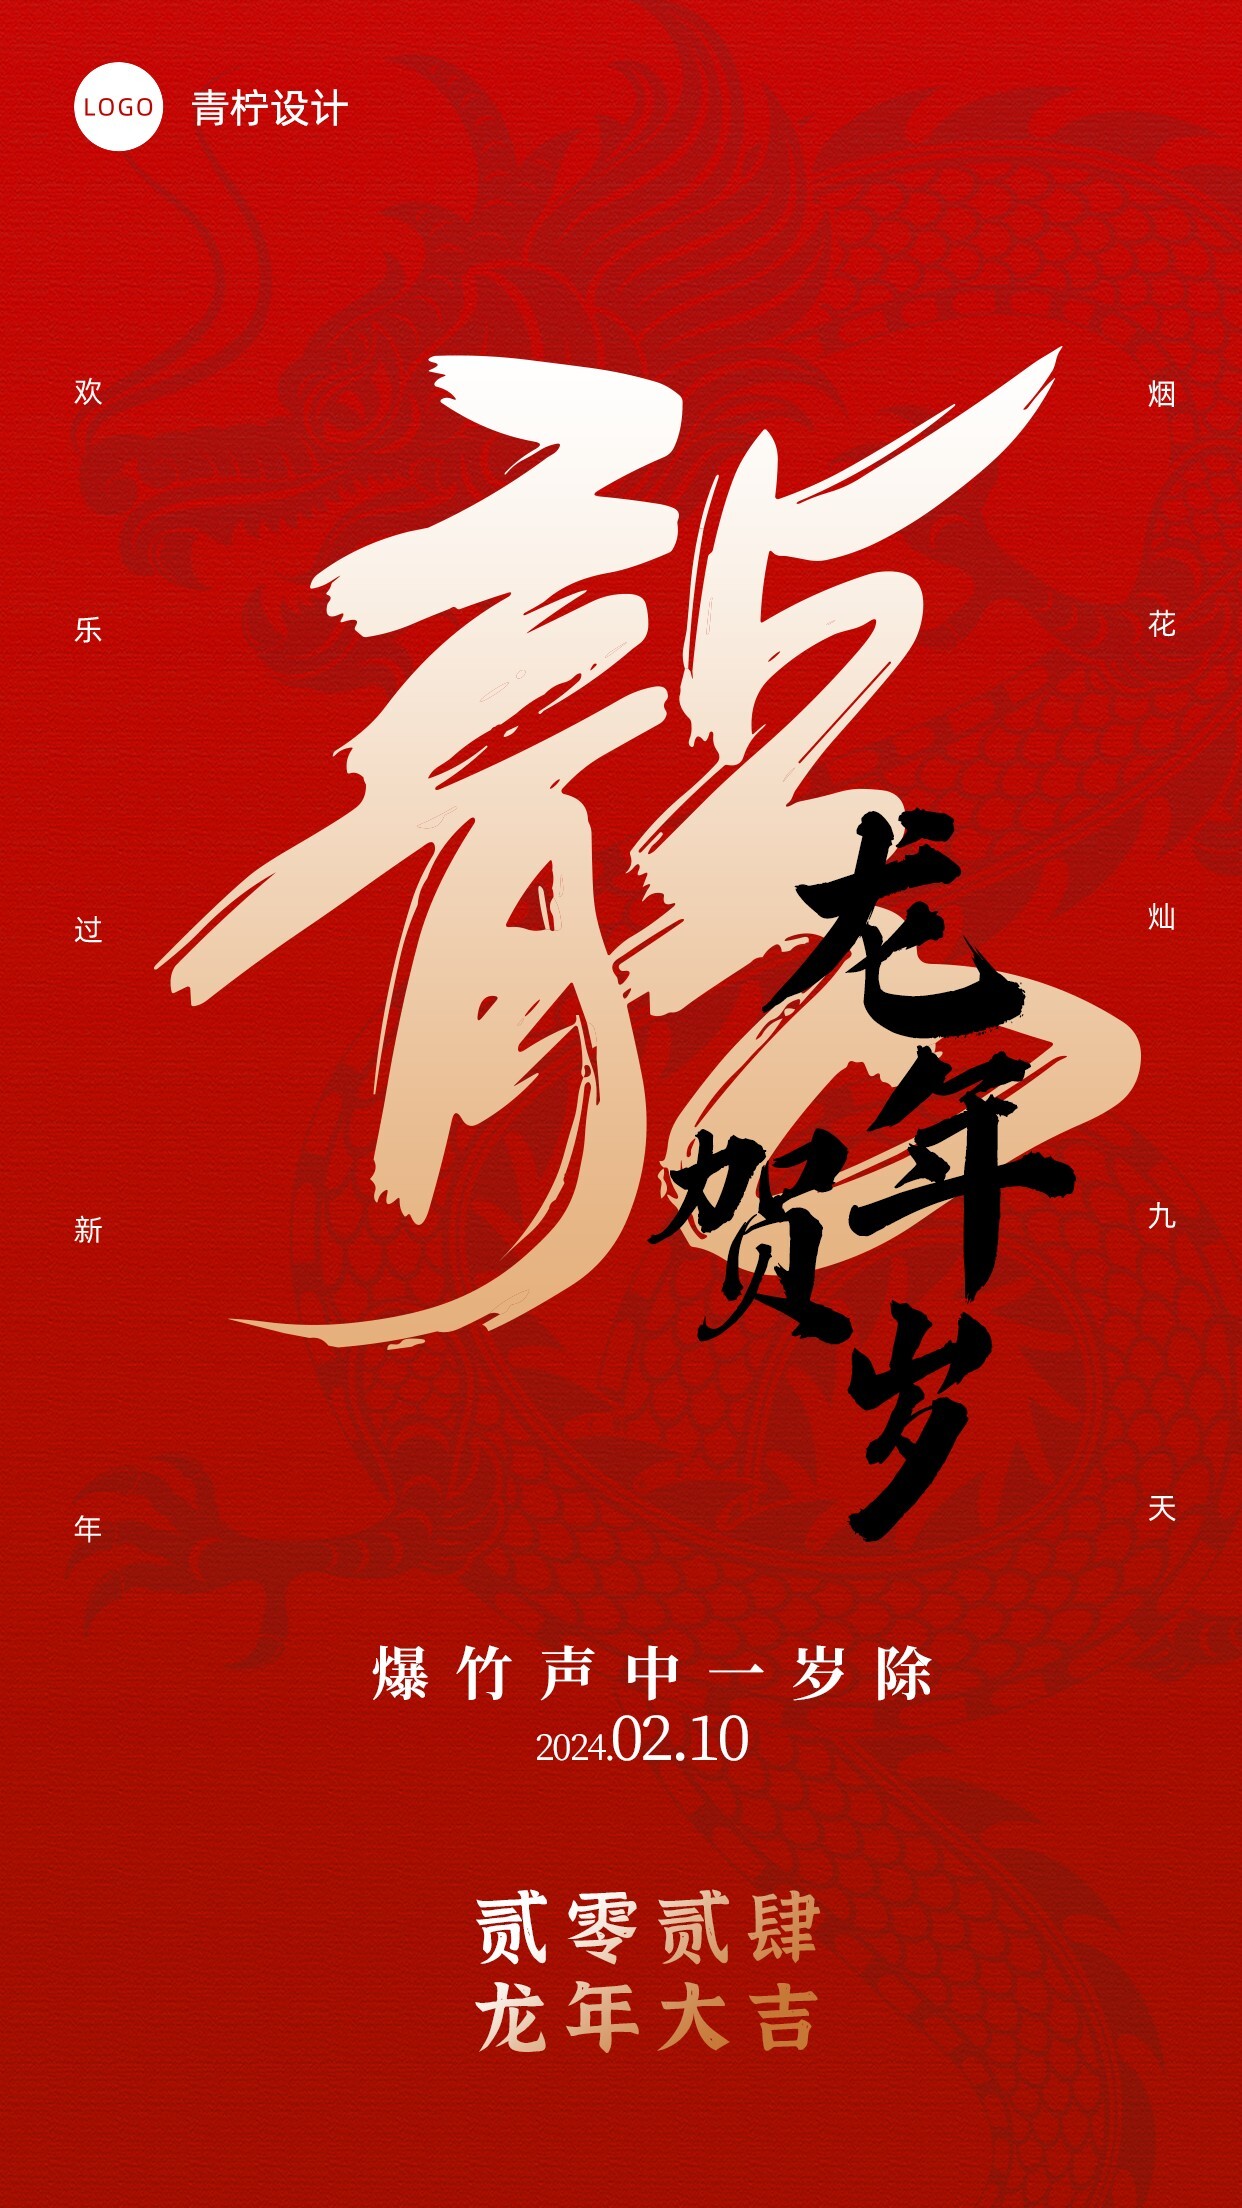 中国风新年节日海报